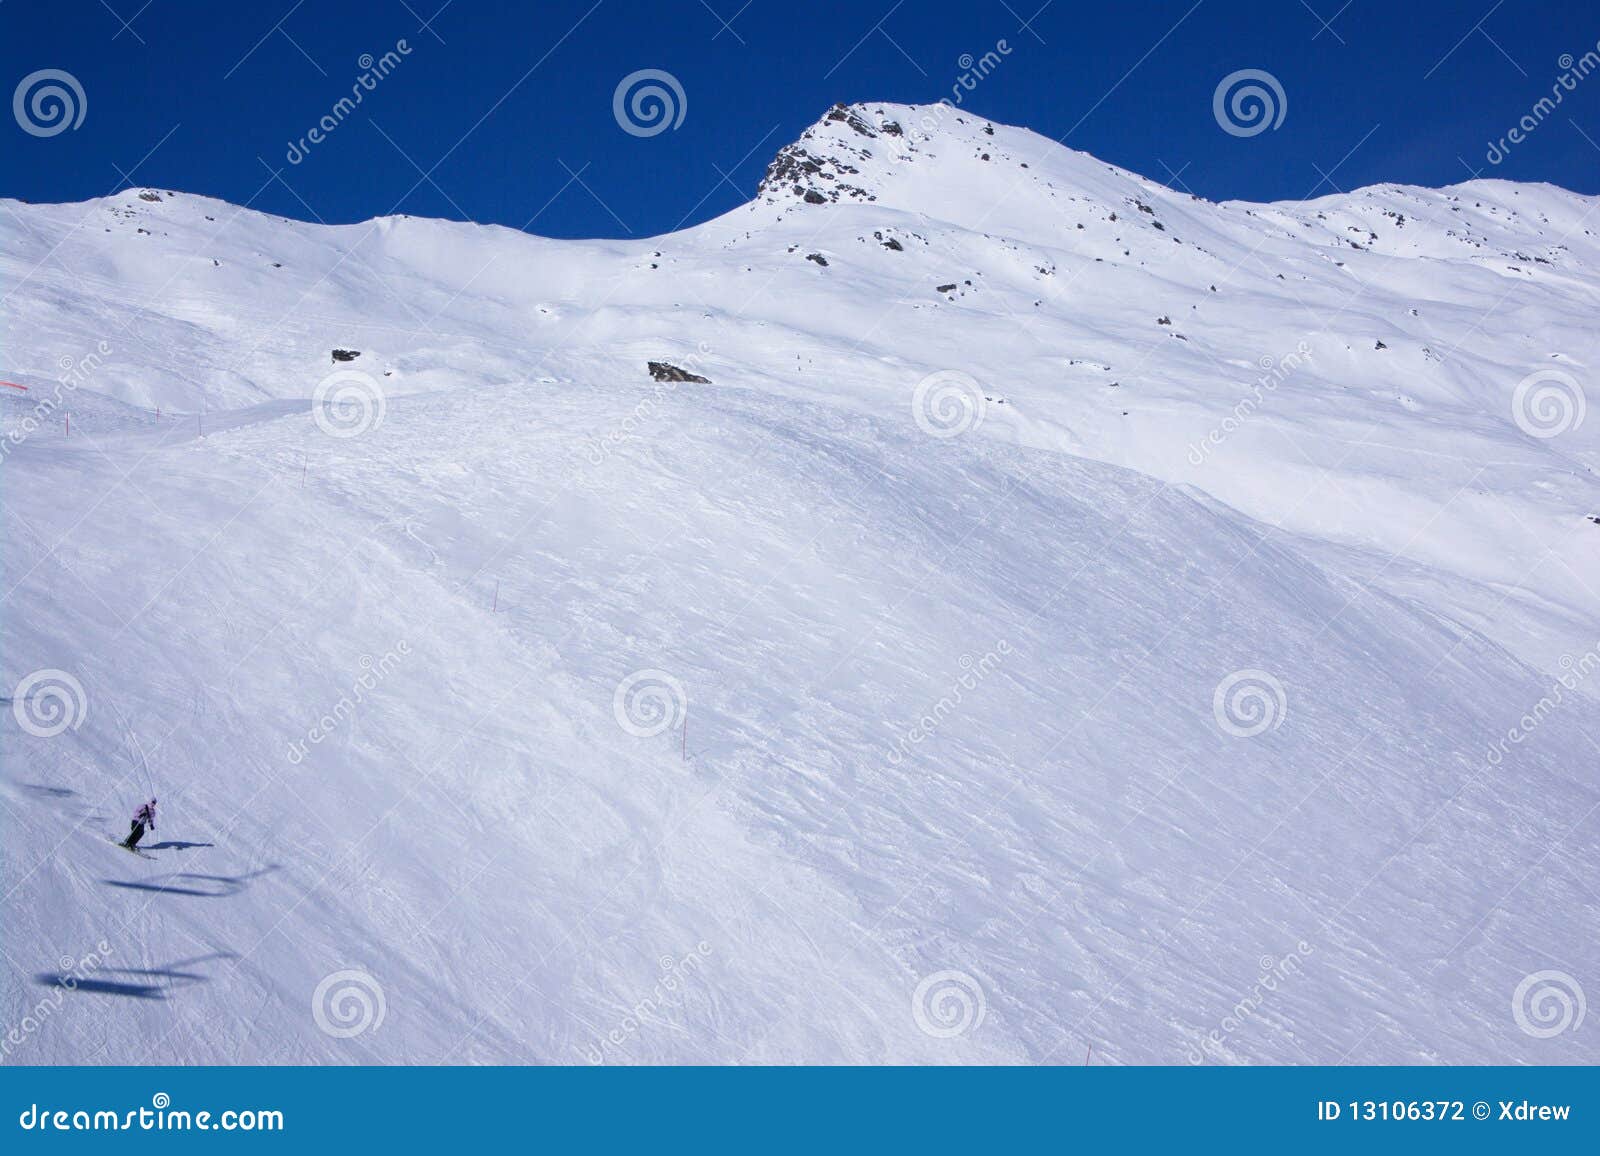 Opinión del invierno de la estación de esquí. Opinión sobre cuestas de montaña alpestres del invierno de la nieve. Les Contamines, montan@as, Francia, Europa.